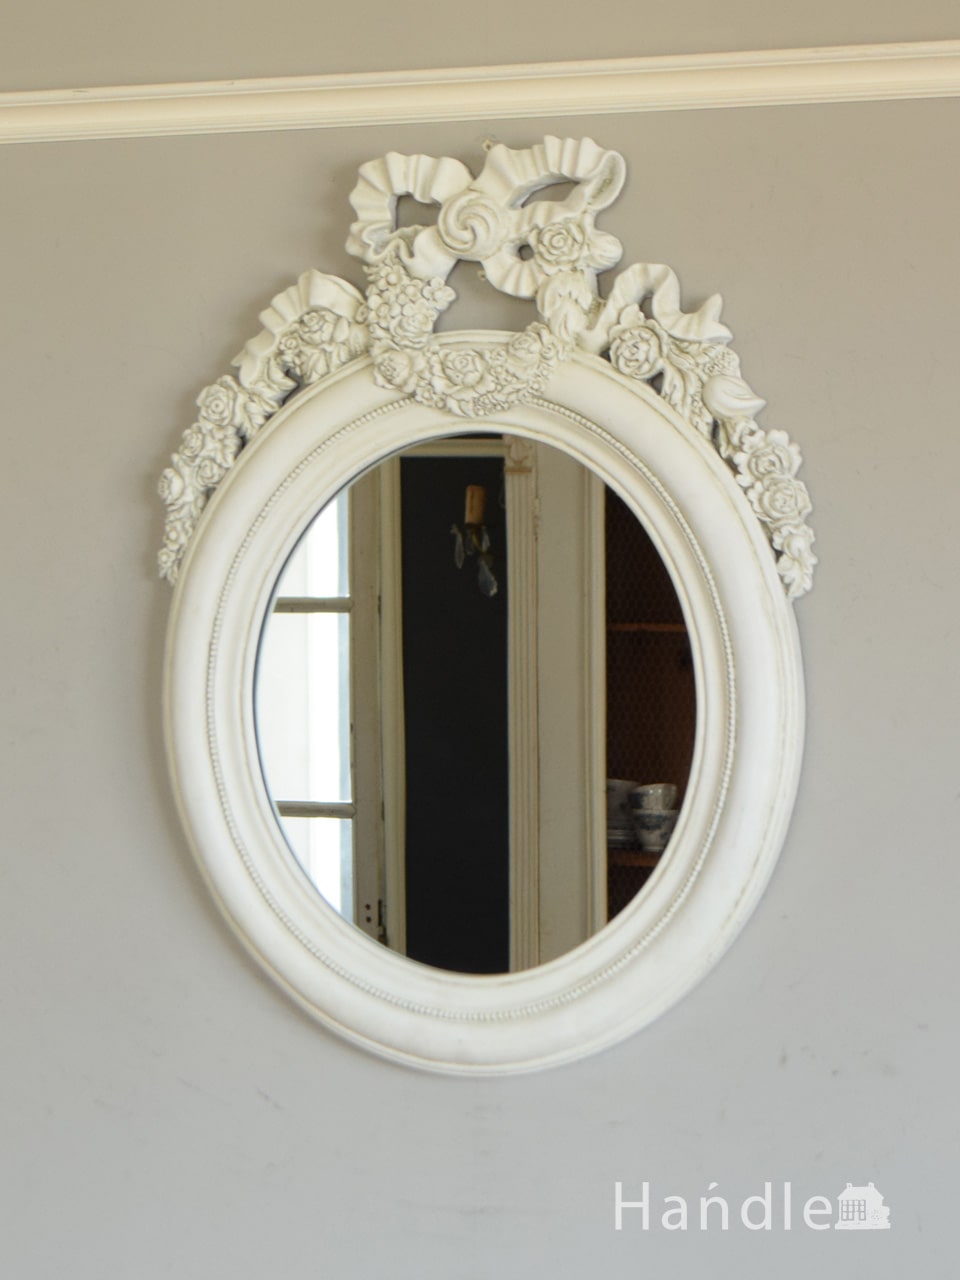 イタリア生まれのおしゃれな鏡、デコラティブな女性らしい装飾が魅力の 